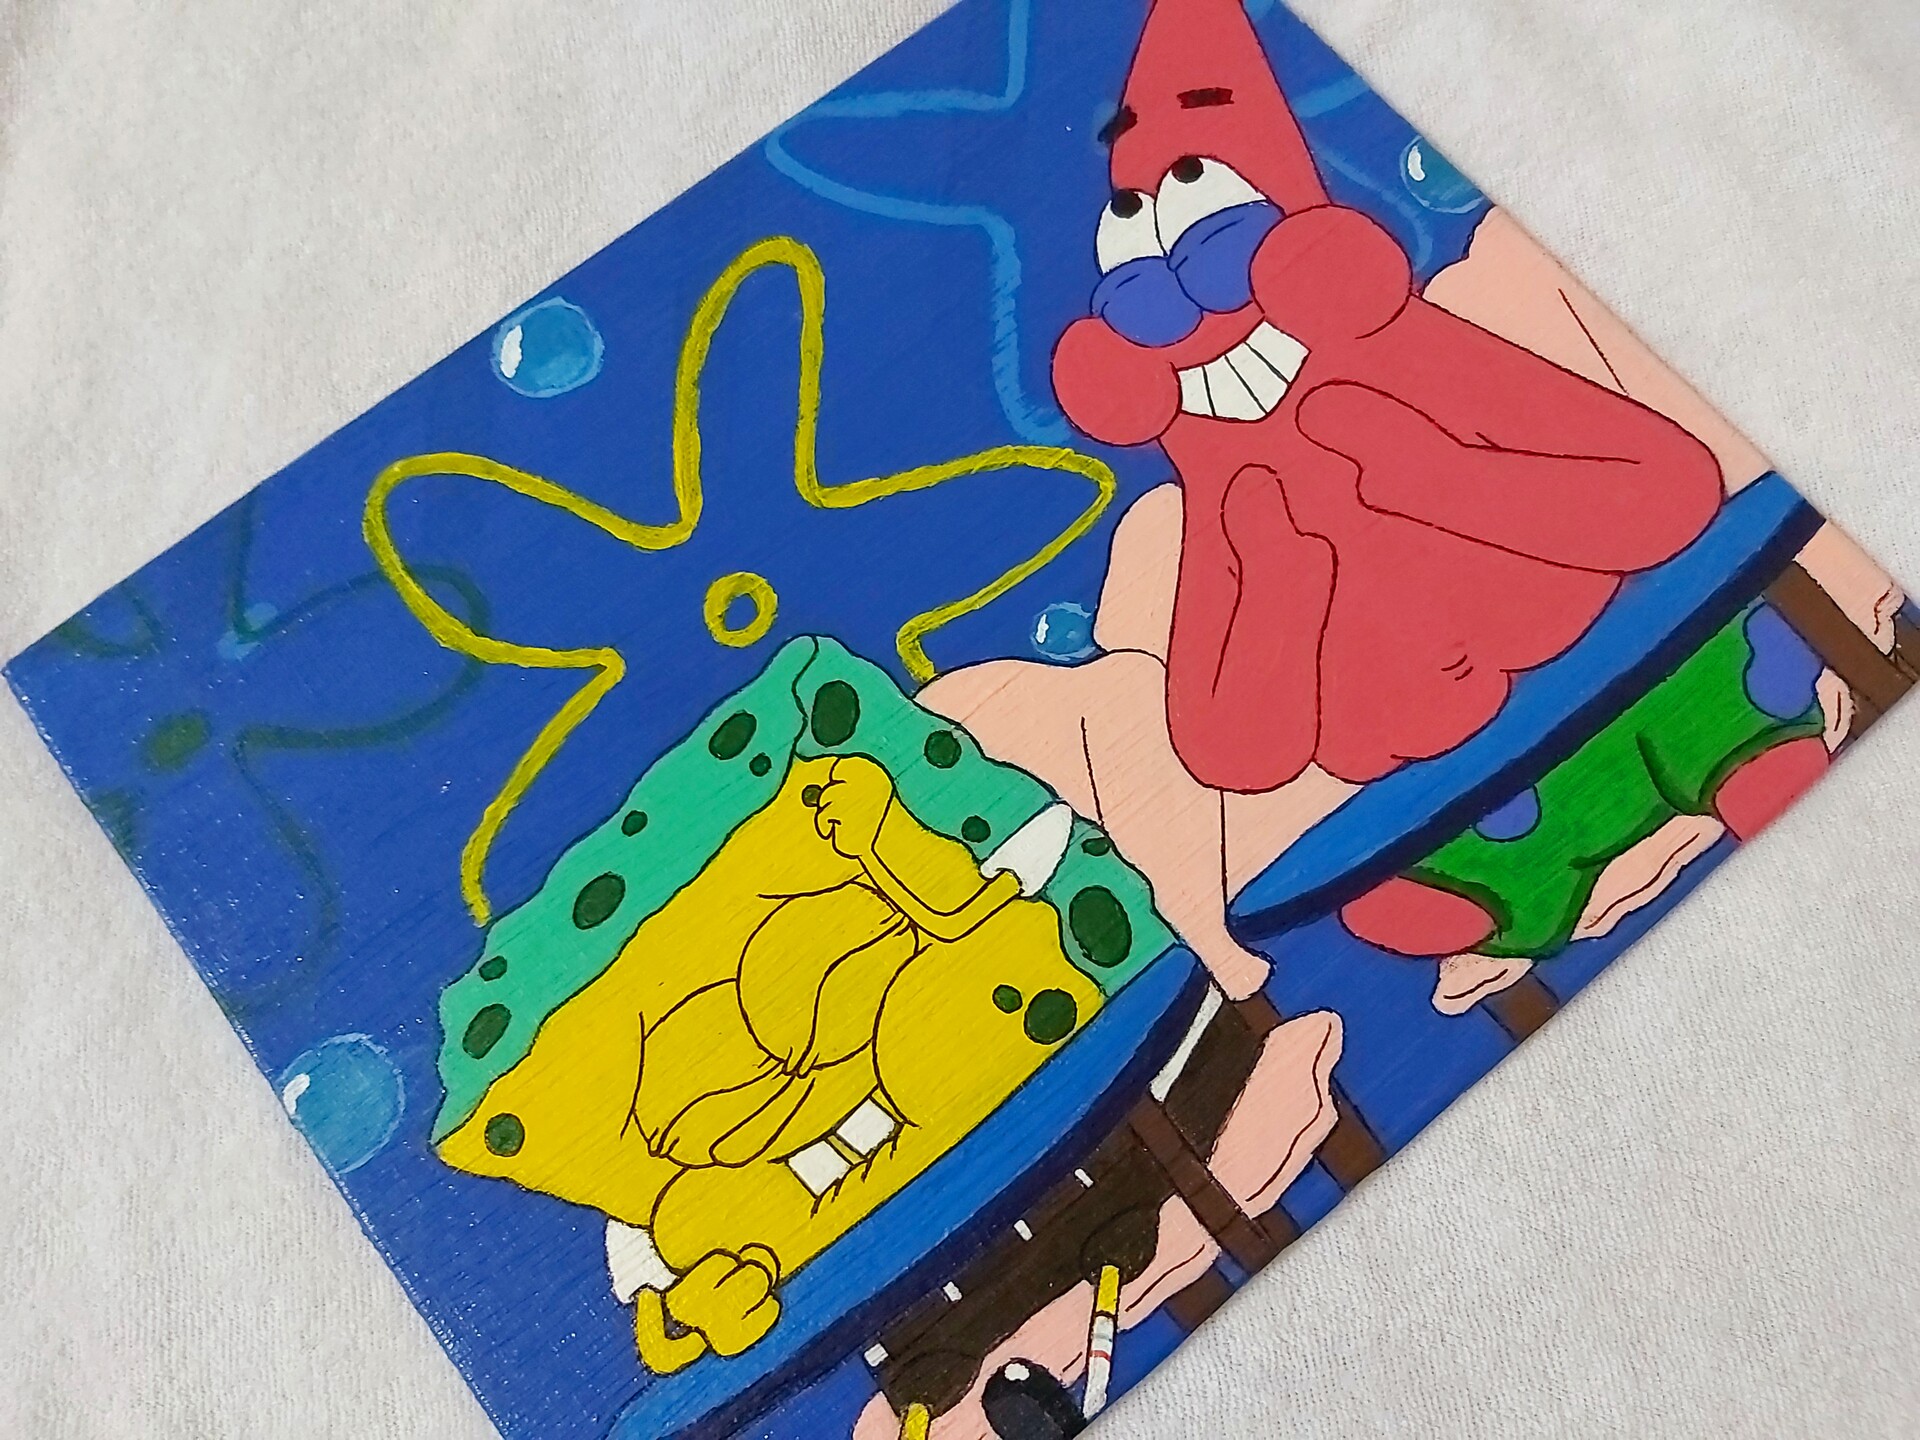 ArtStation - Spongebob & Patrick star painting